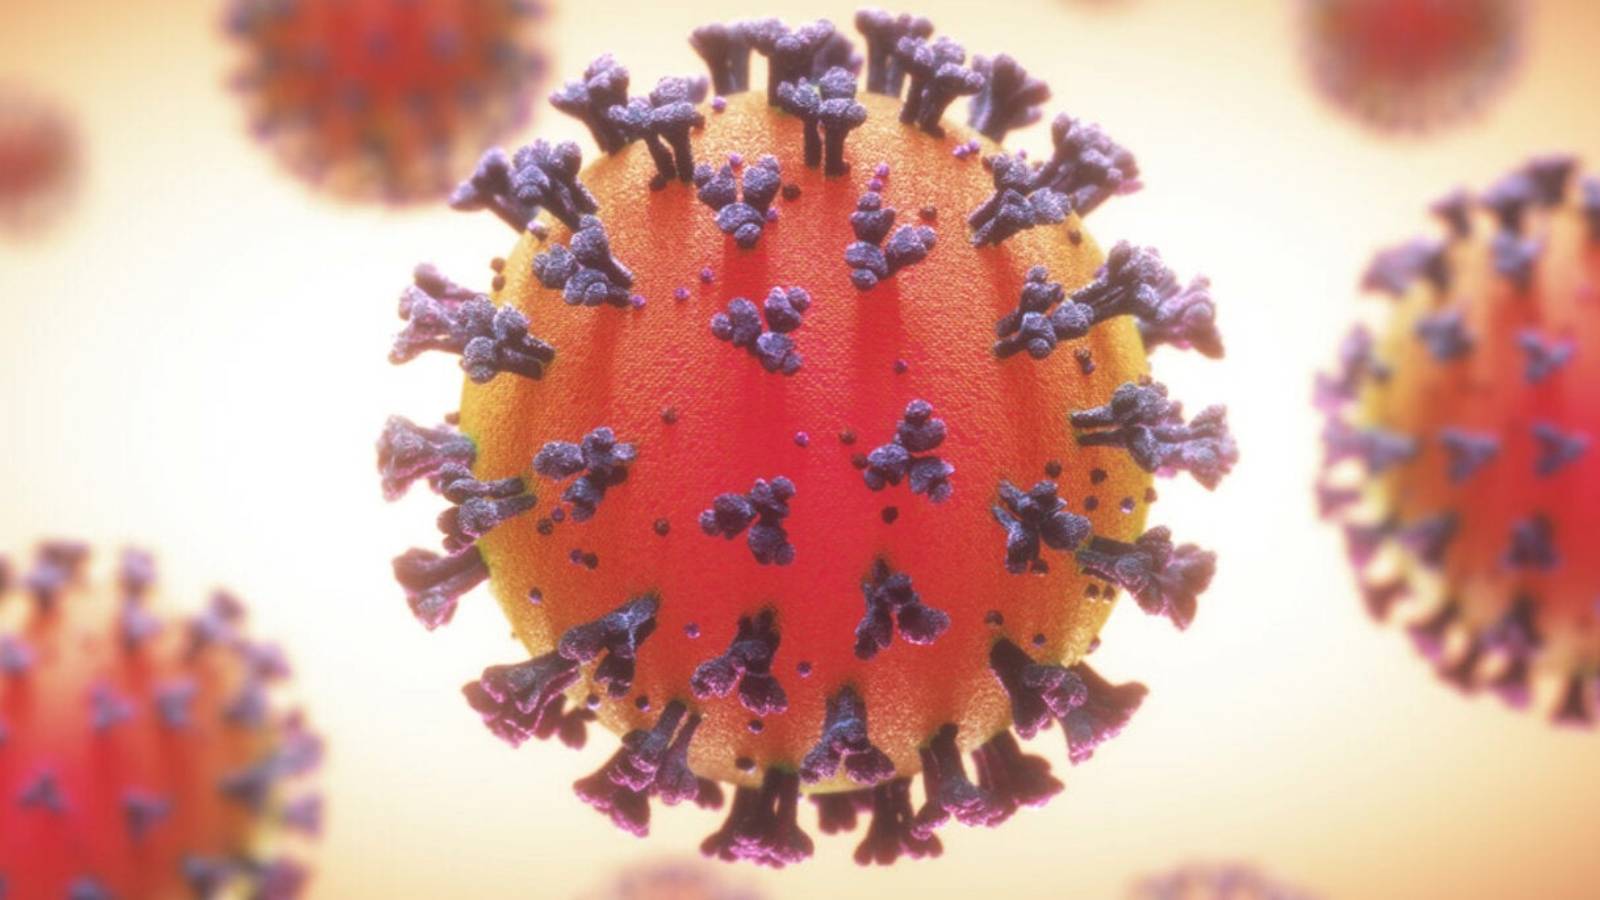 OMS Decizia Urgenta Coronavirus Anuntata Lumii